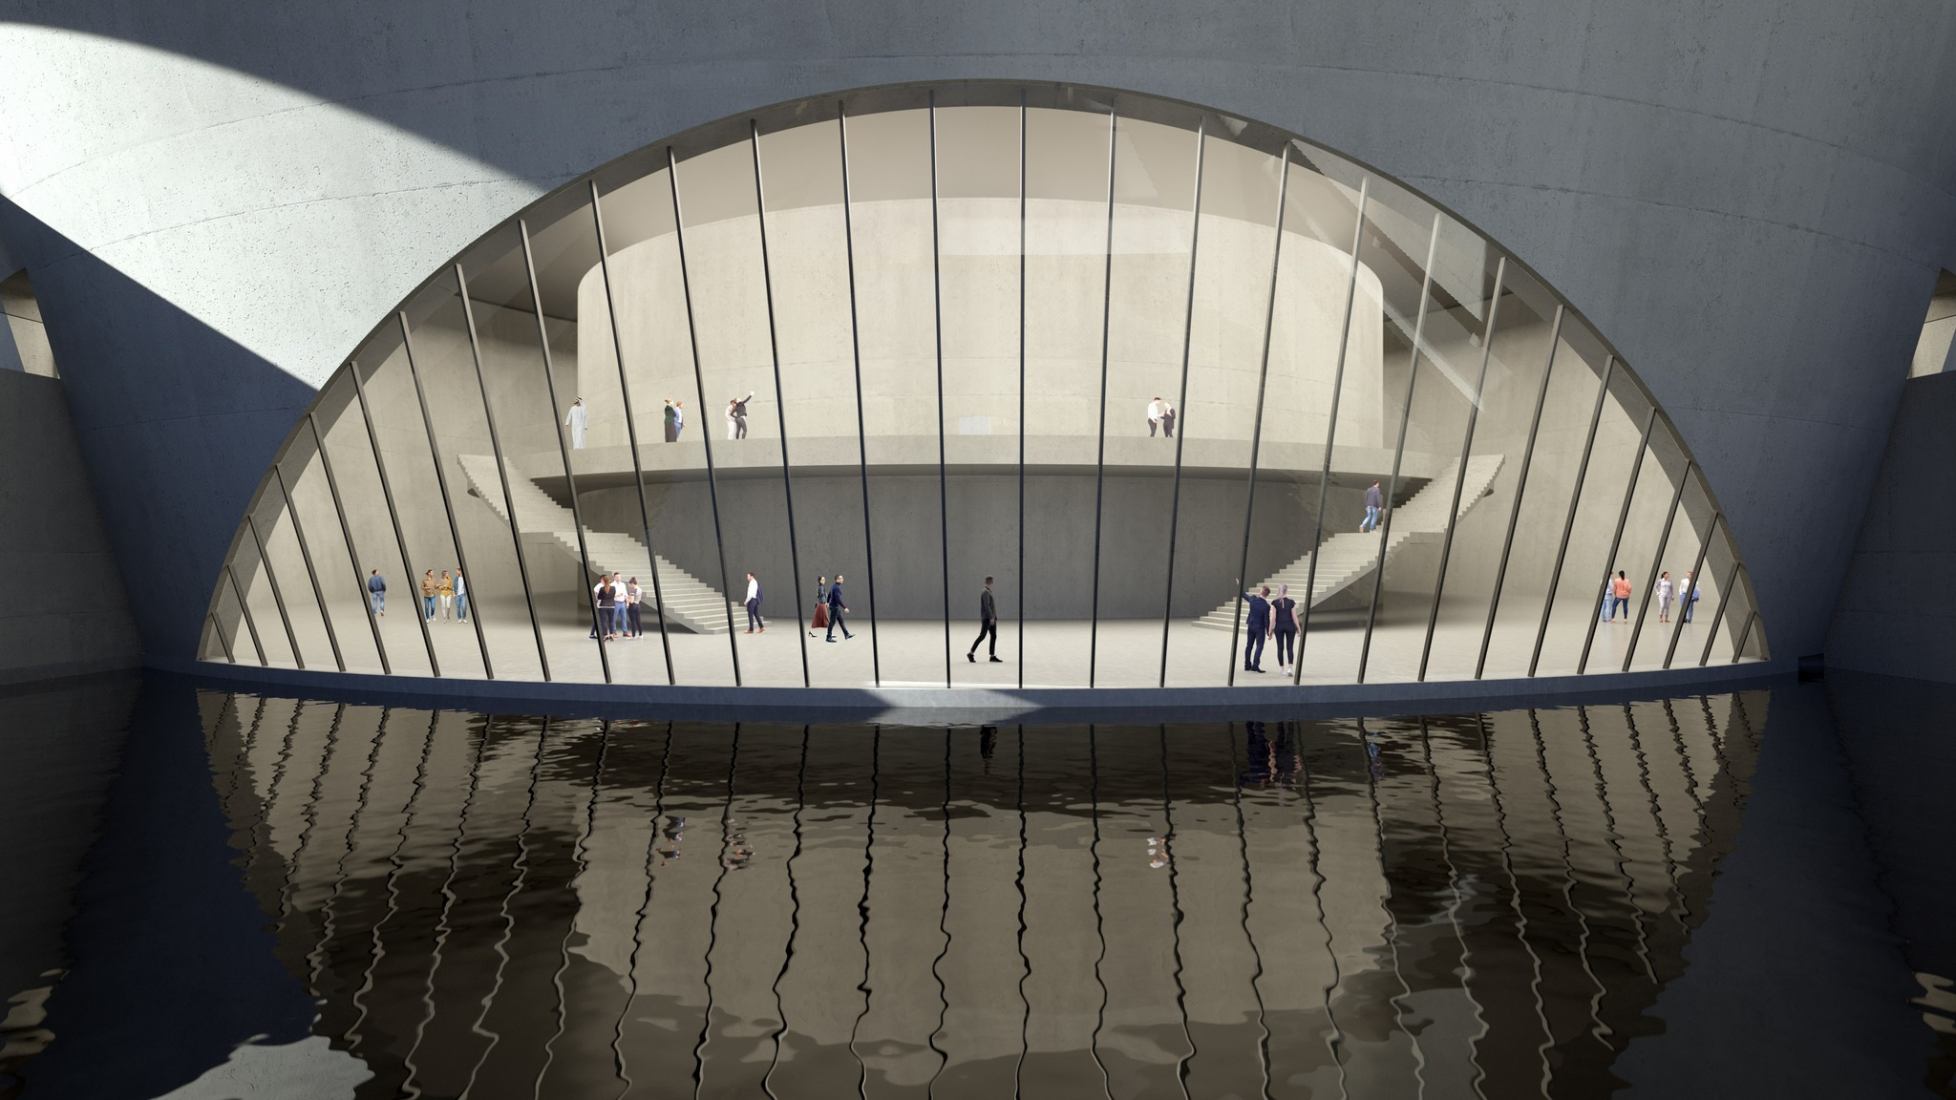 Visualización por Tadao Ando Architects, cortesía de Arada.